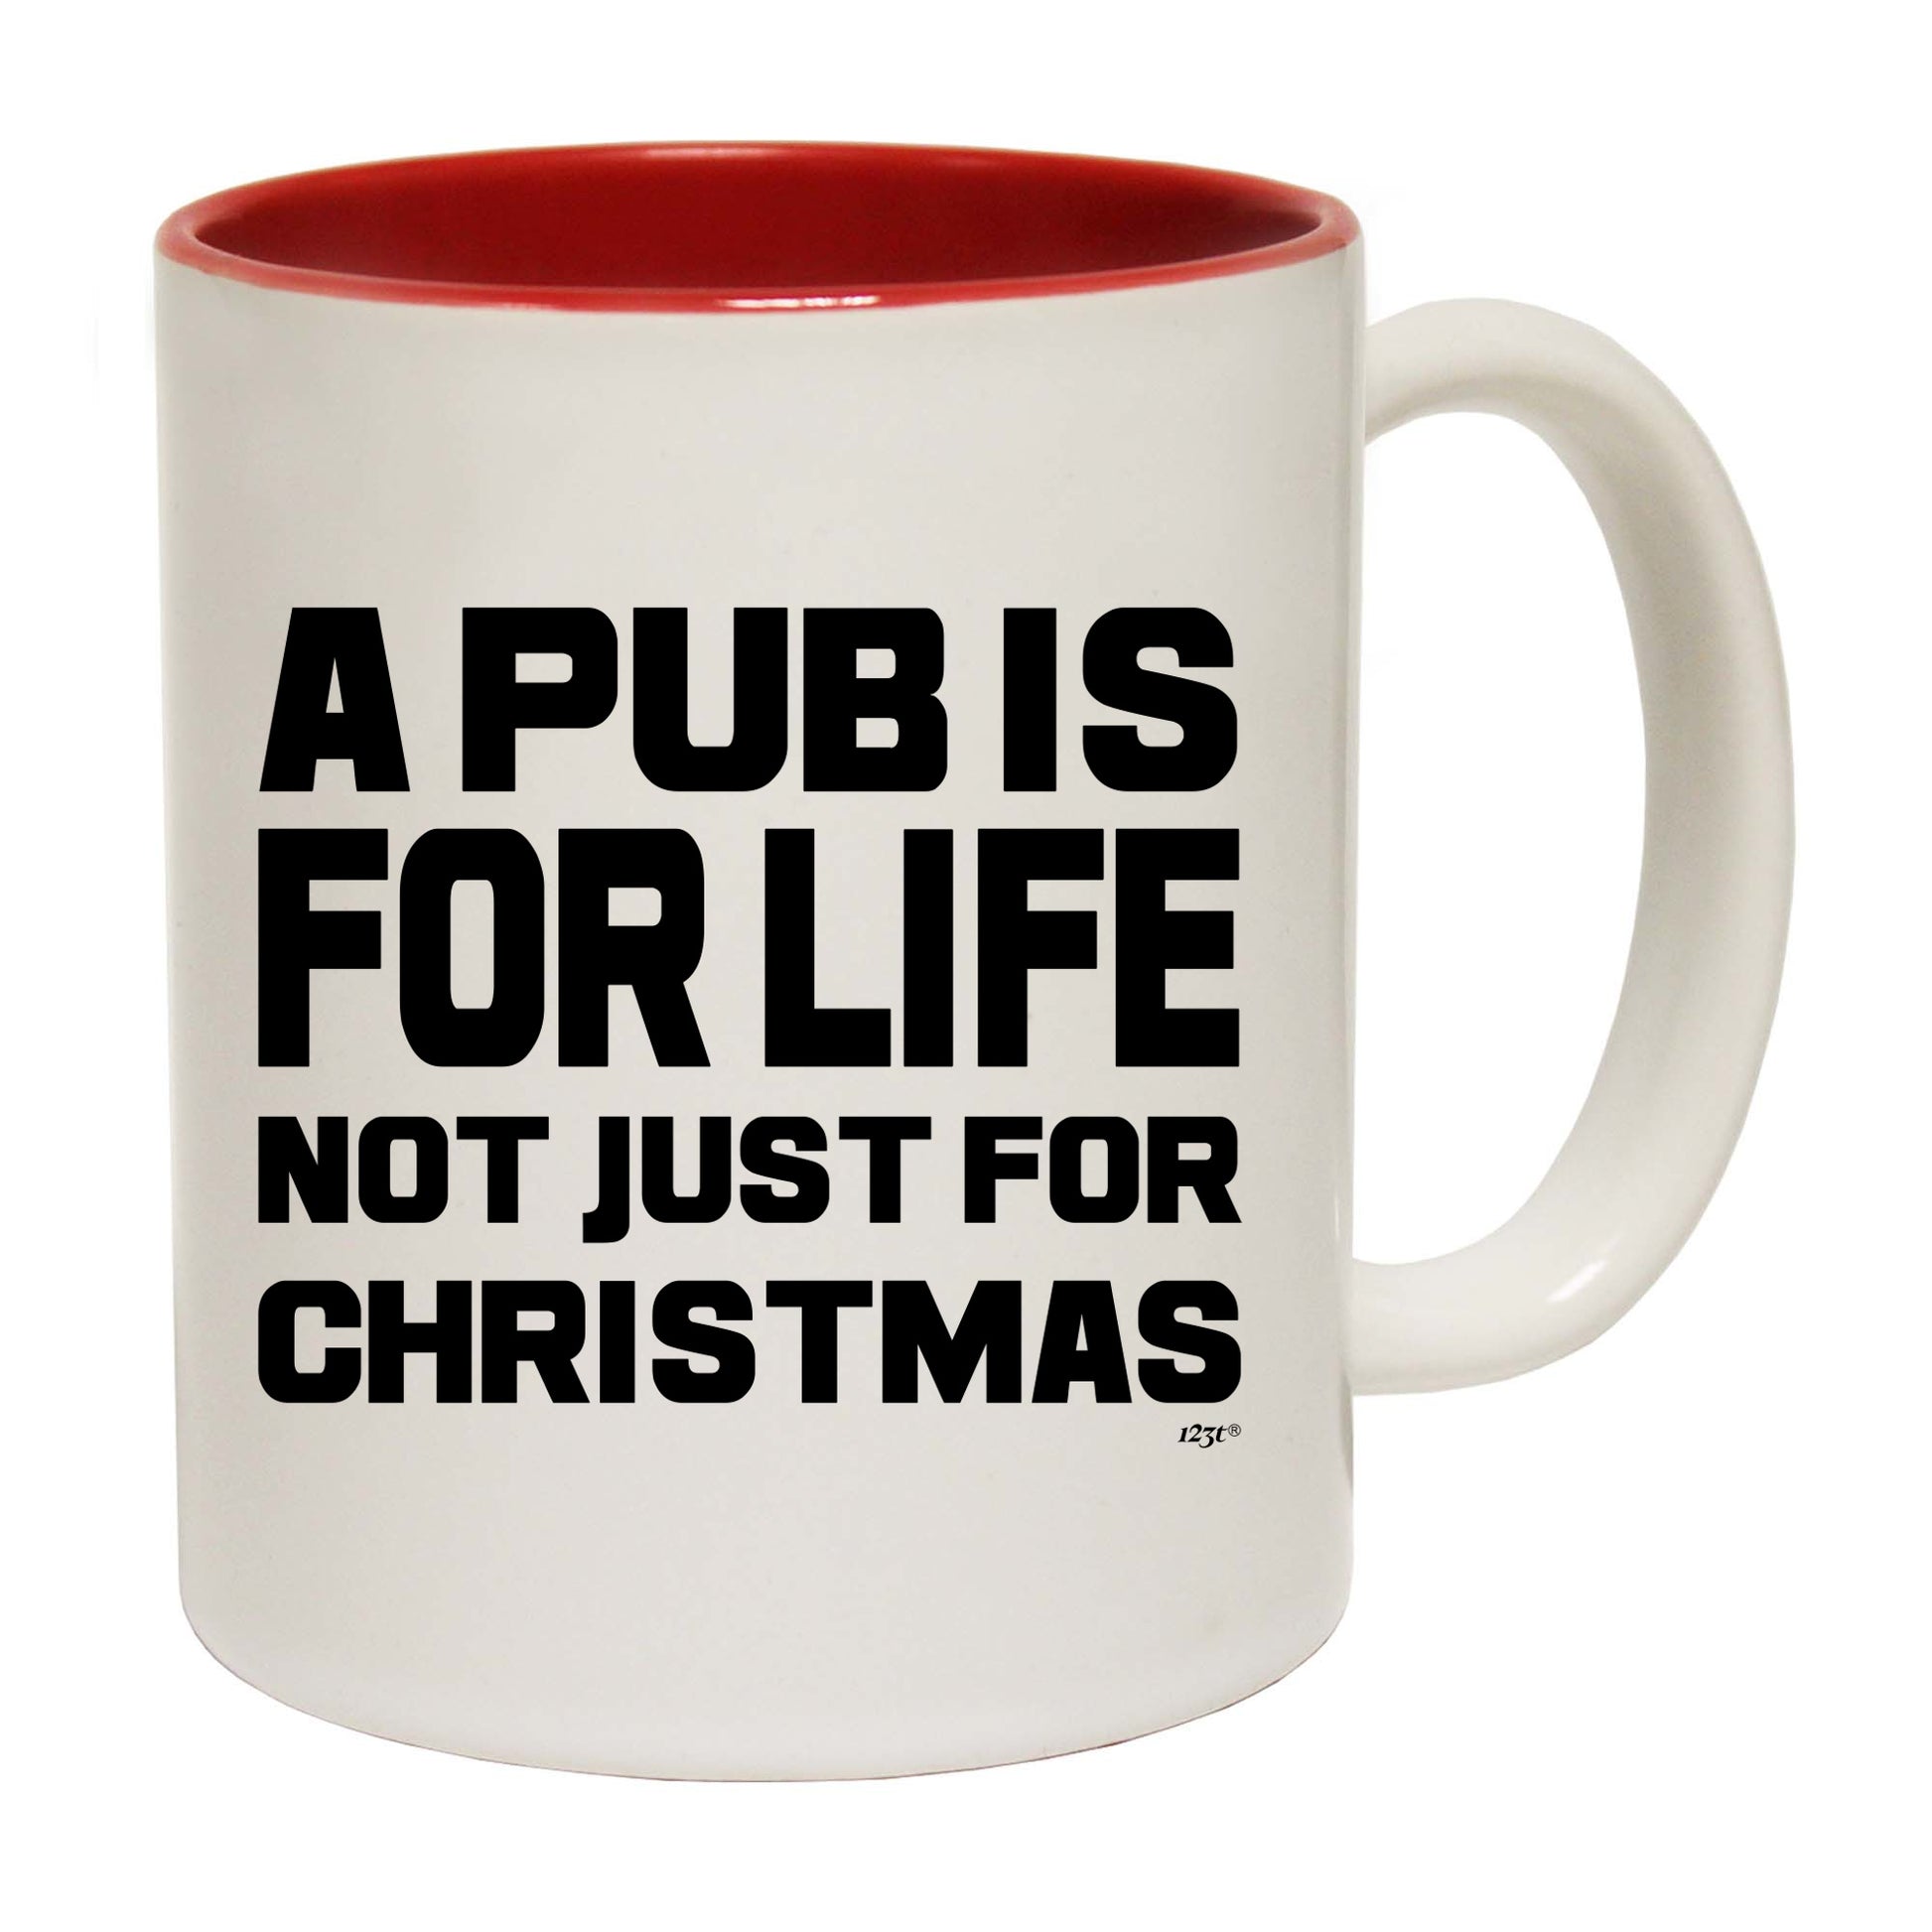 The Christmas Hub - A Pub Is For Life Not Just For Christmas - Funny Coffee Mug